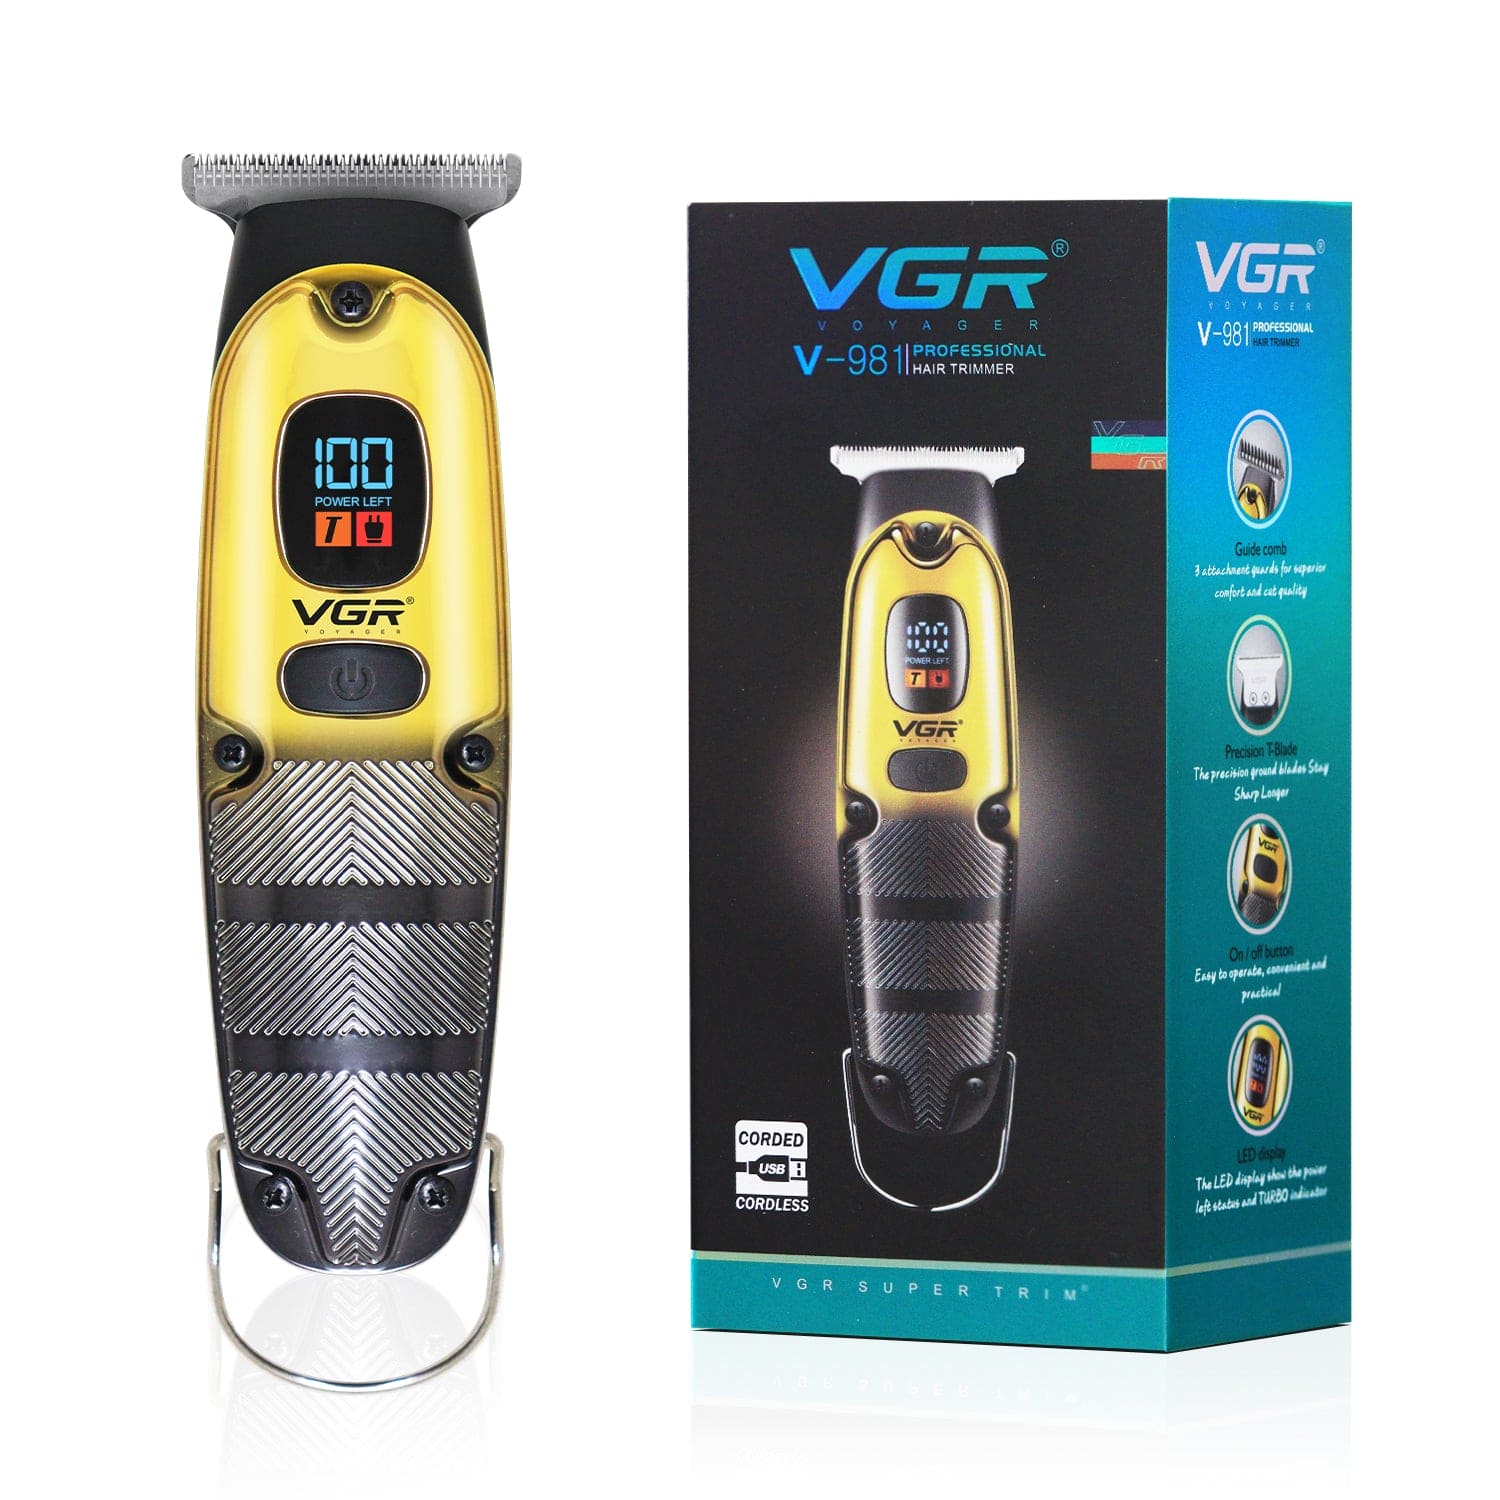 VGR, VGRindia, VGRofficial, VGR V-981